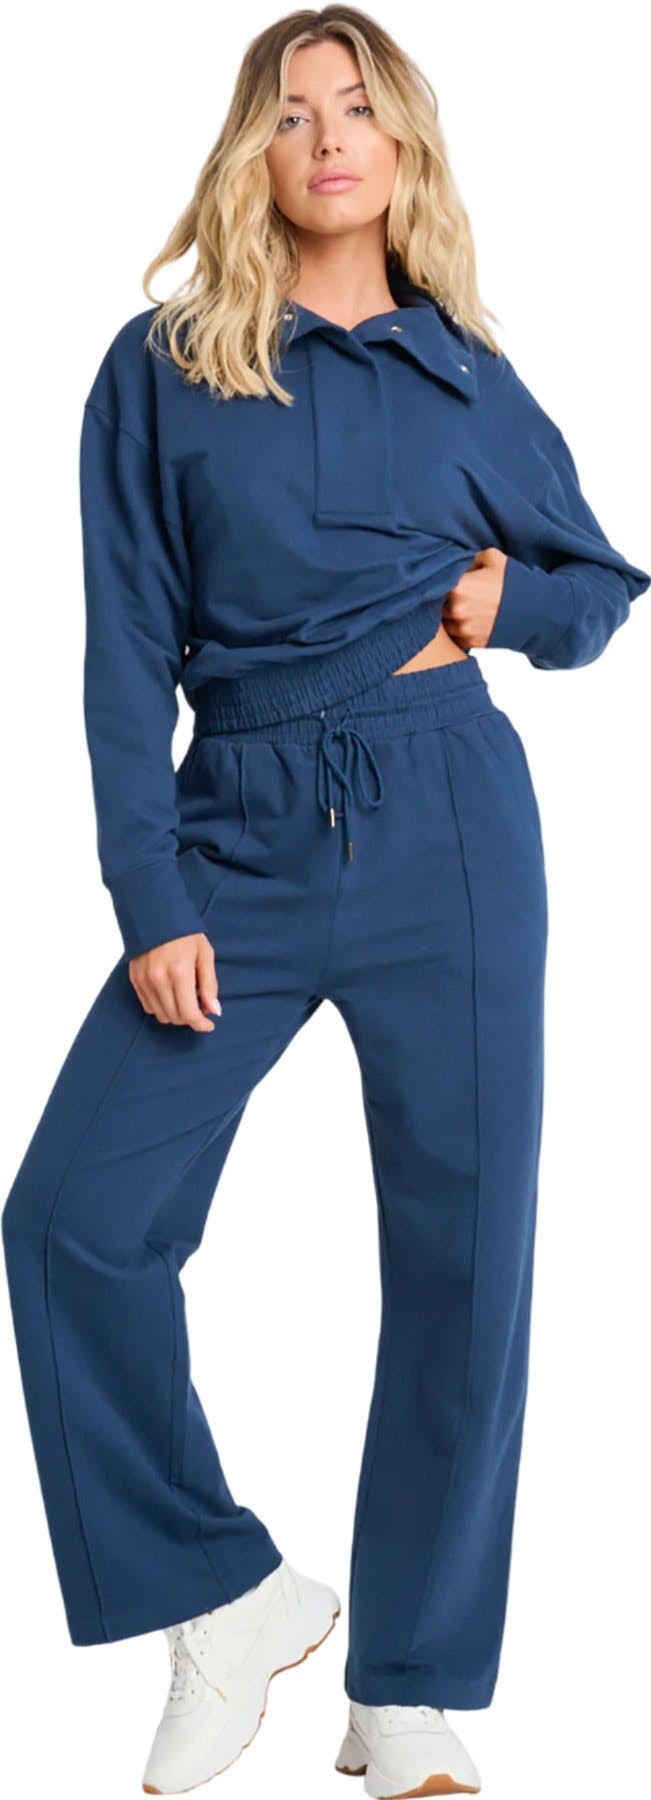 Numéro de l'image de la galerie de produits 1 pour le produit Pantalon ample confort biologique - Femme